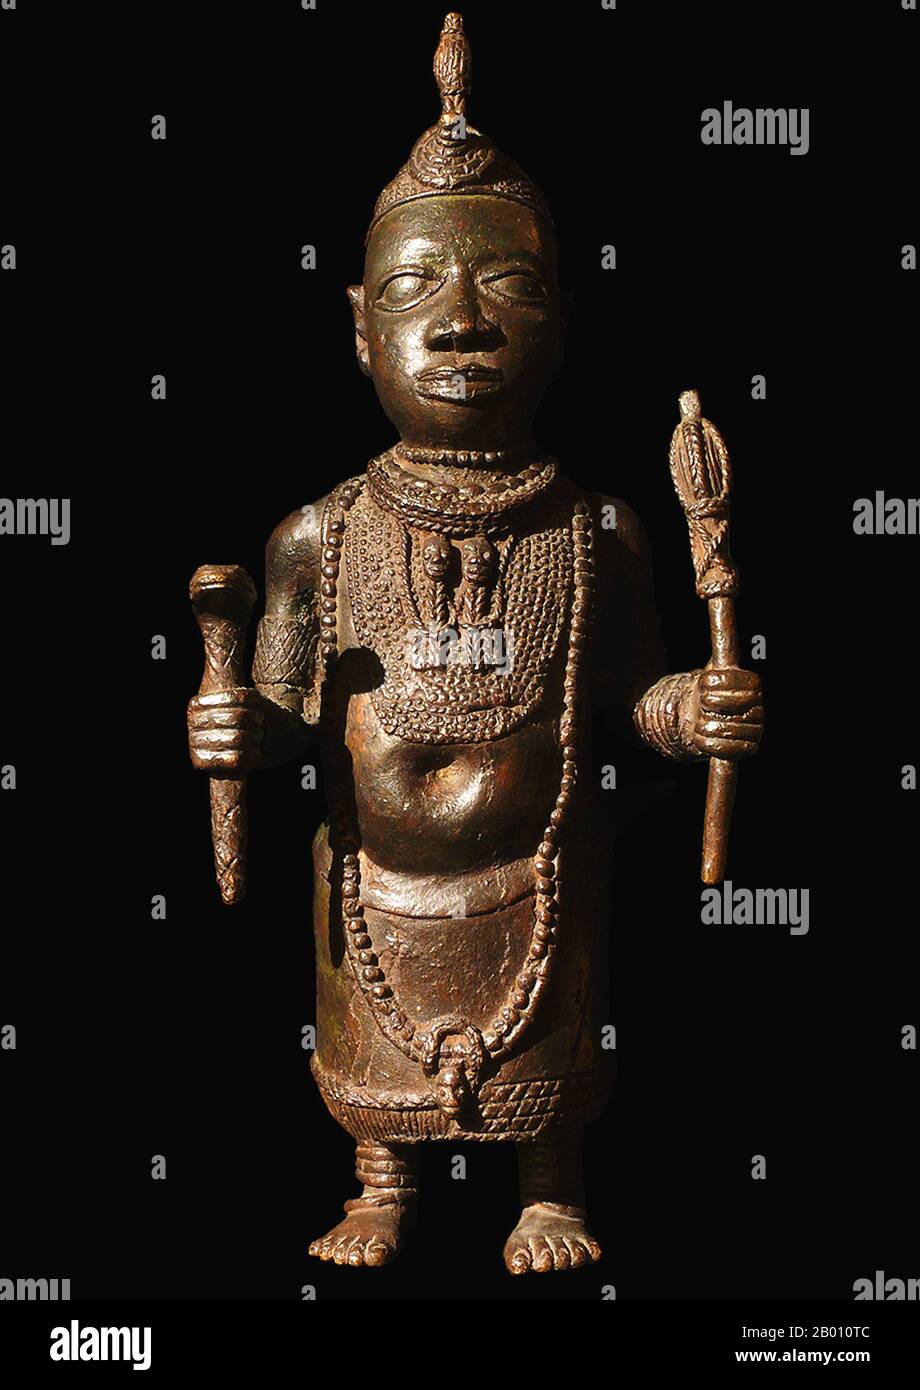 Nigeria : figure de bronze d'un roi Edo, Royaume du Bénin. L'Empire du Bénin (1440–1897) était un État africain précolonial dans ce qui est maintenant le Nigeria moderne. Il ne faut pas la confondre avec le pays moderne appelé Bénin (anciennement appelé Dahomey). Banque D'Images